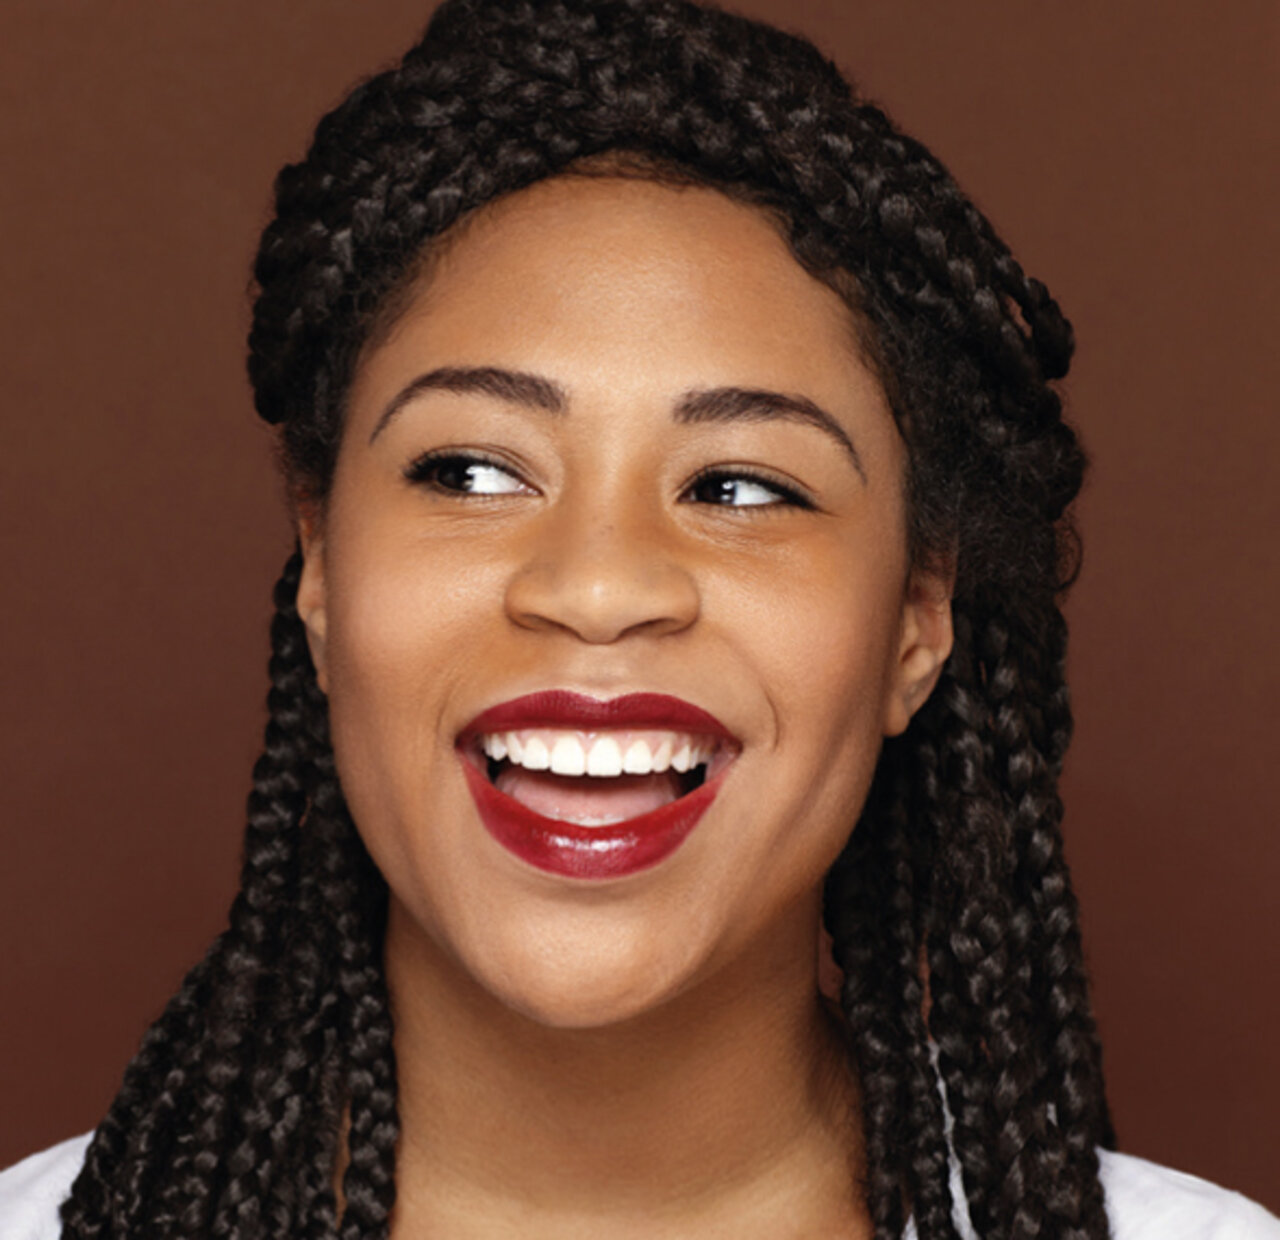 Portrait einer jungen Frau mit dunklem Hauttyp, die fröhlich lacht und einen beerenroten Lippenstift trägt